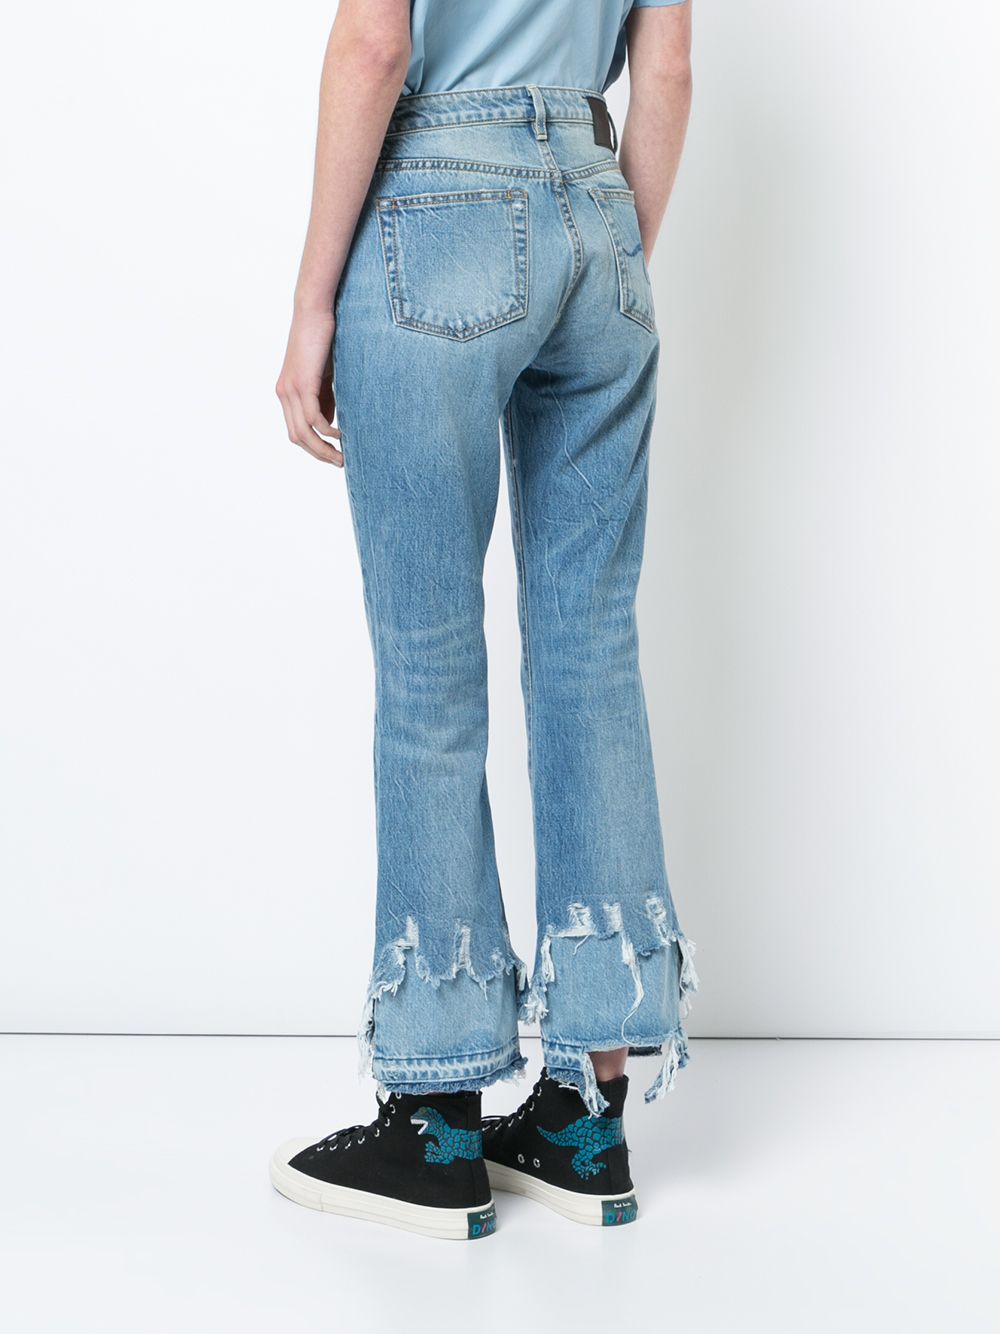 фото R13 джинсы с потертой отделкой